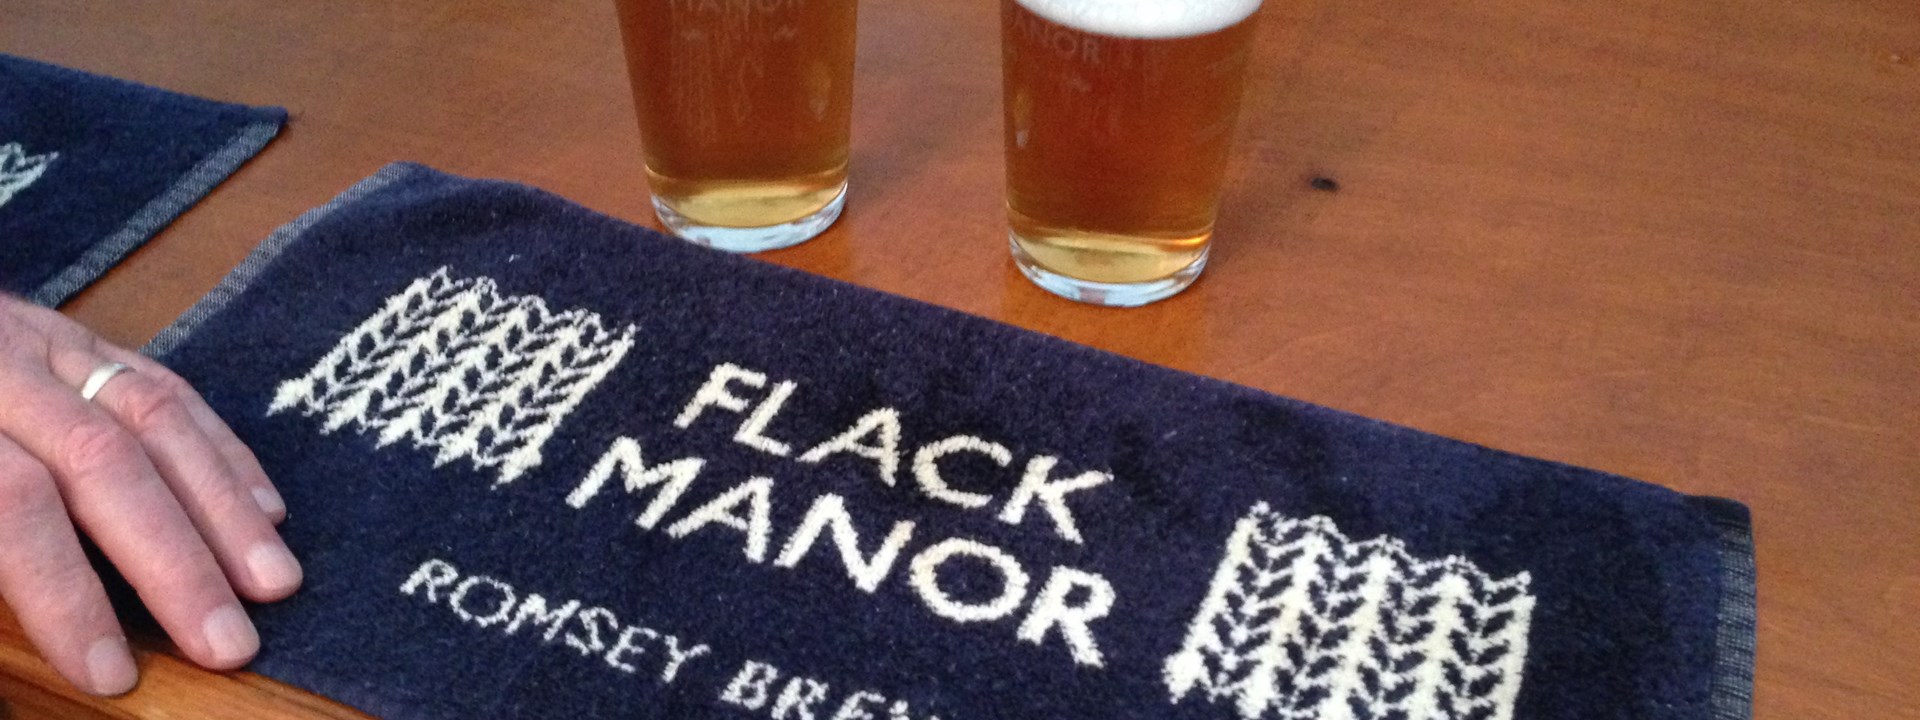 Beers Flack Manor Brewery Romsey